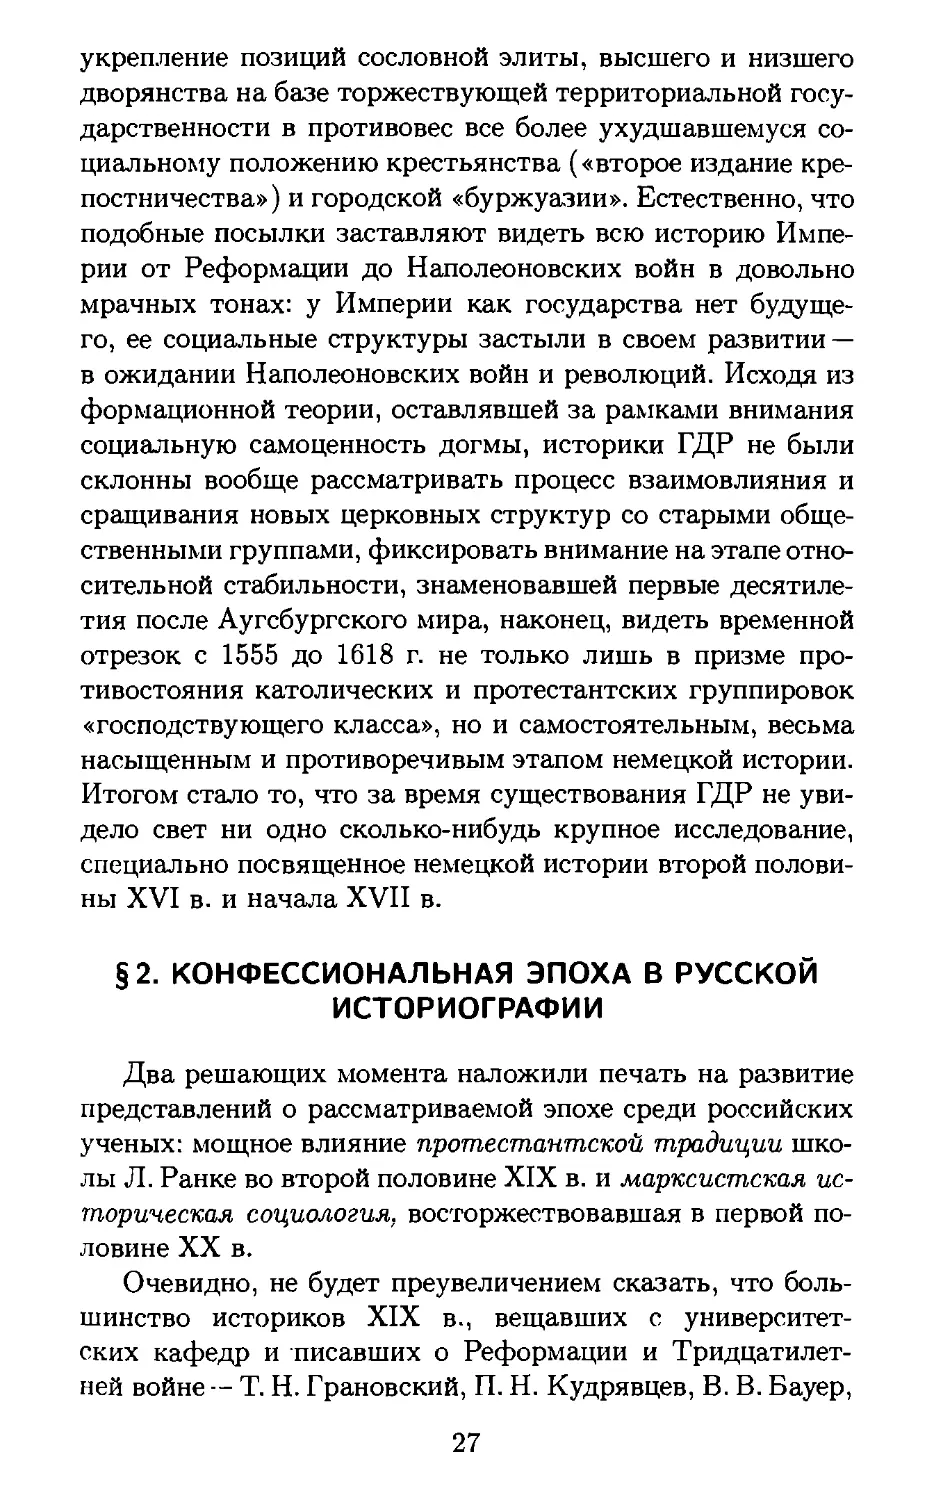 § 2. Конфессиональная эпоха в русской историографии